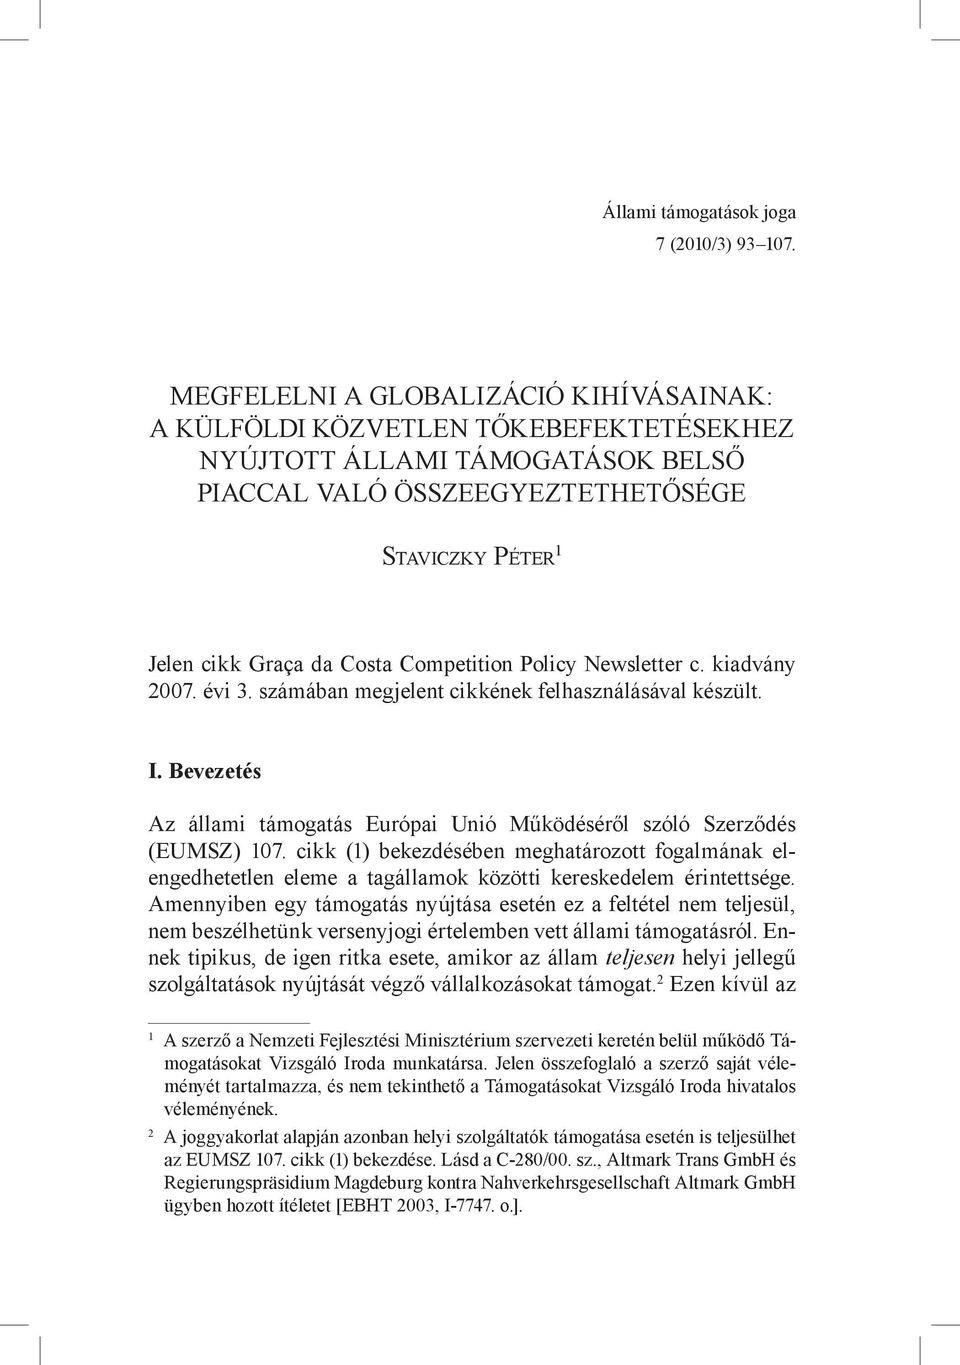 Competition Policy Newsletter c. kiadvány 2007. évi 3. számában megjelent cikkének felhasználásával készült. I. Bevezetés Az állami támogatás Európai Unió Működéséről szóló Szerződés (EUMSZ) 107.